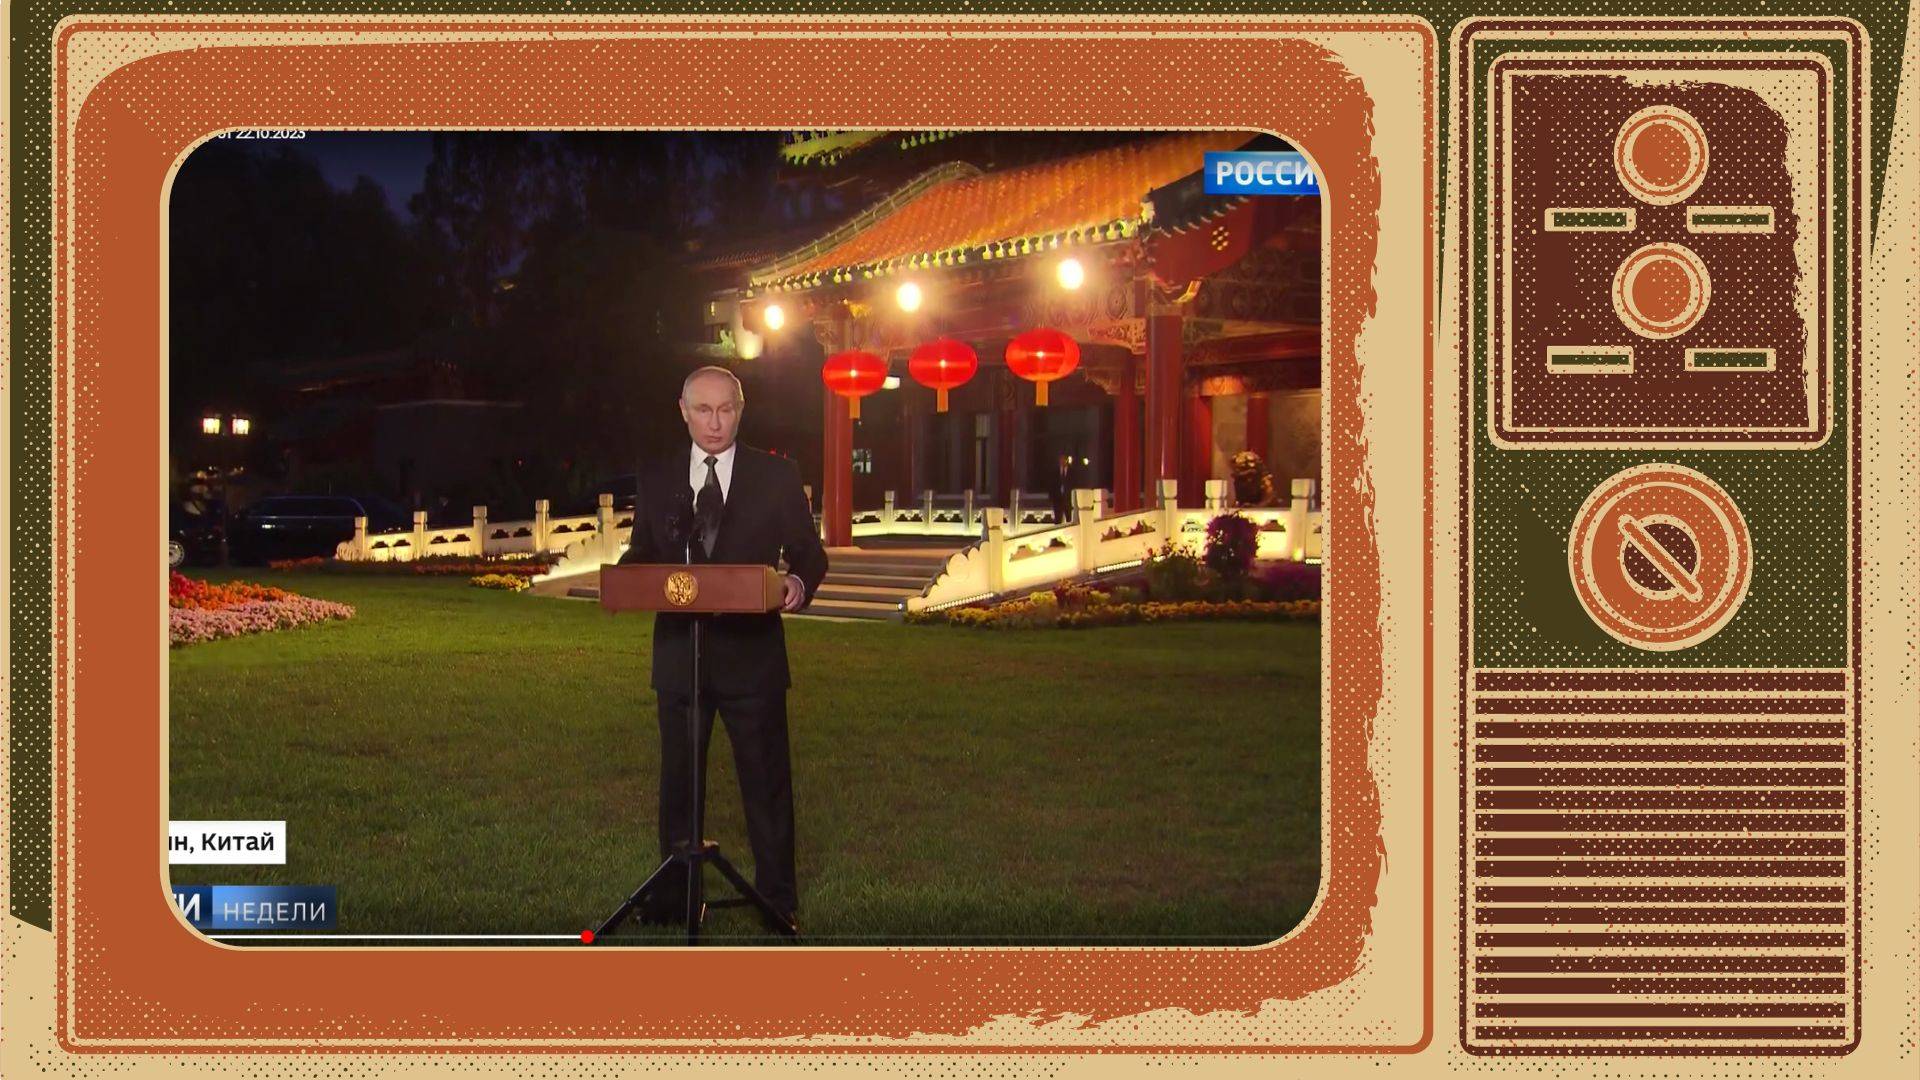 Grafika. W ramce stareko telewizora screern z Wiesti Putin przy pulpicie na trawie. W tle chińska budowla z czerwonymi lampionami